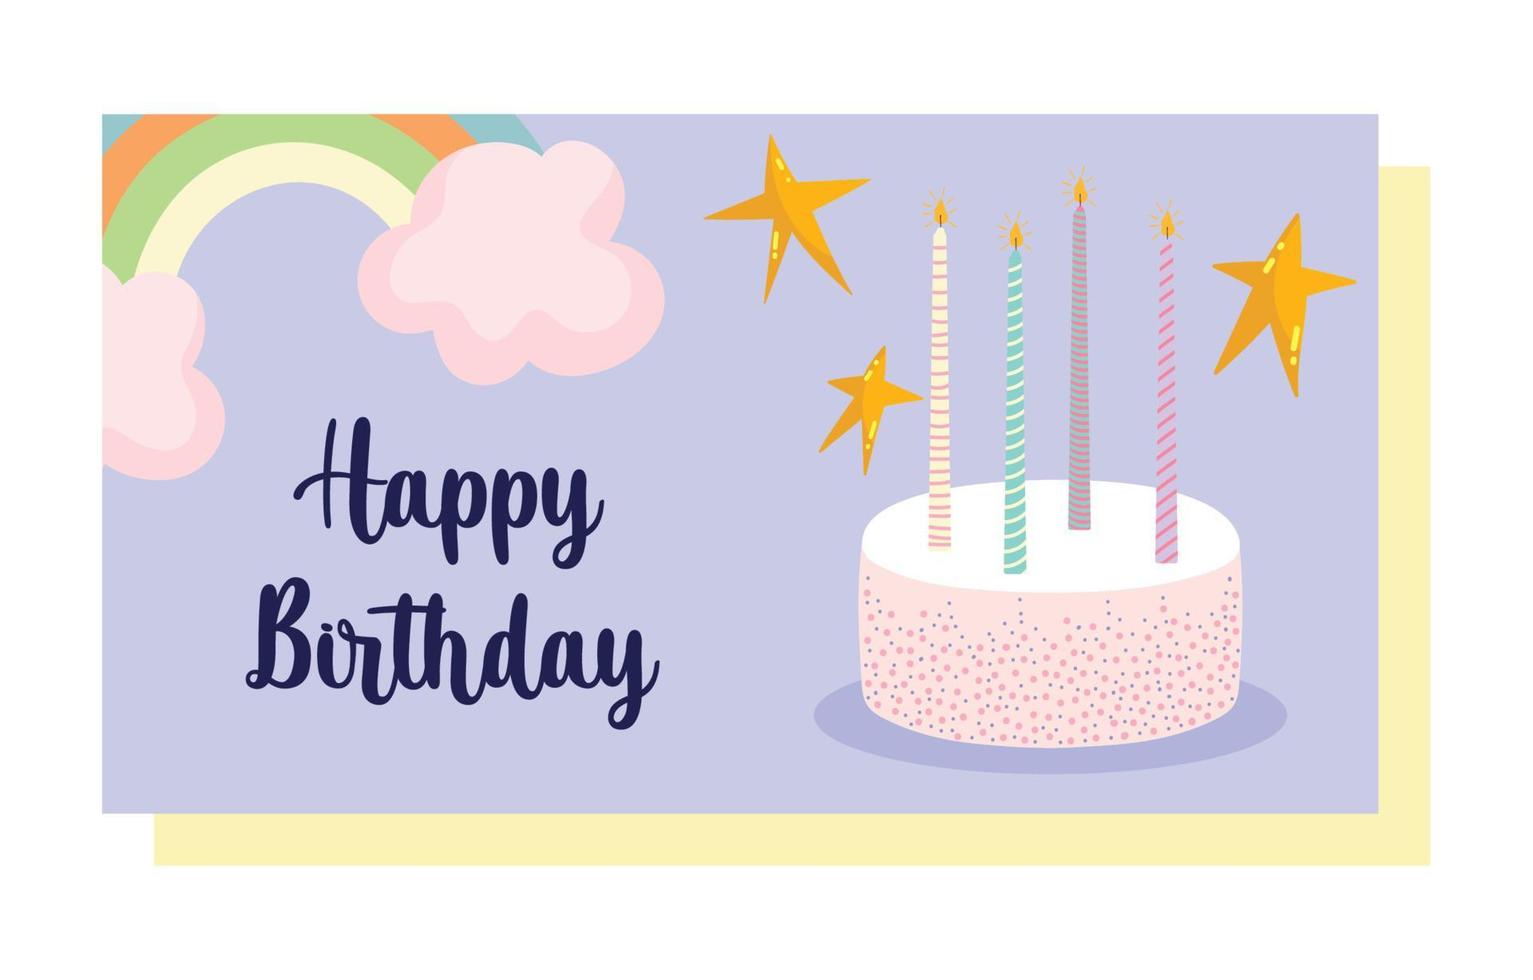 feliz cumpleaños, pastel dulce con velas y tarjeta de decoración de celebración de dibujos animados de arco iris vector